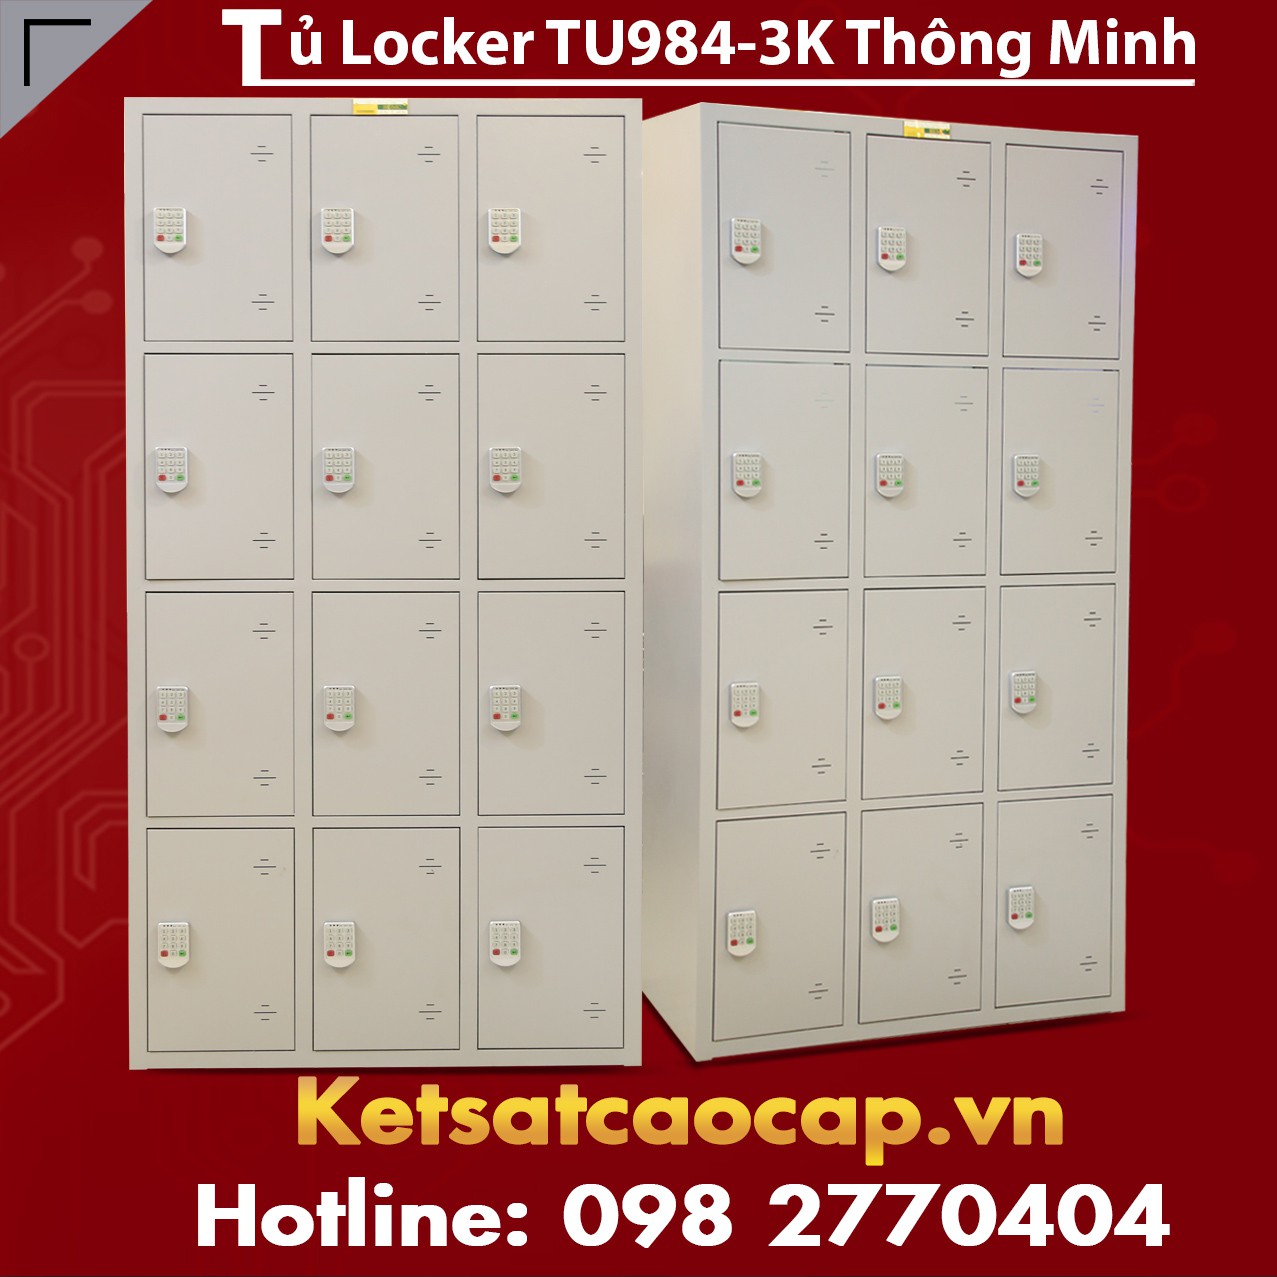 Tủ locker TU984-3K 12 khoang, màu ghi